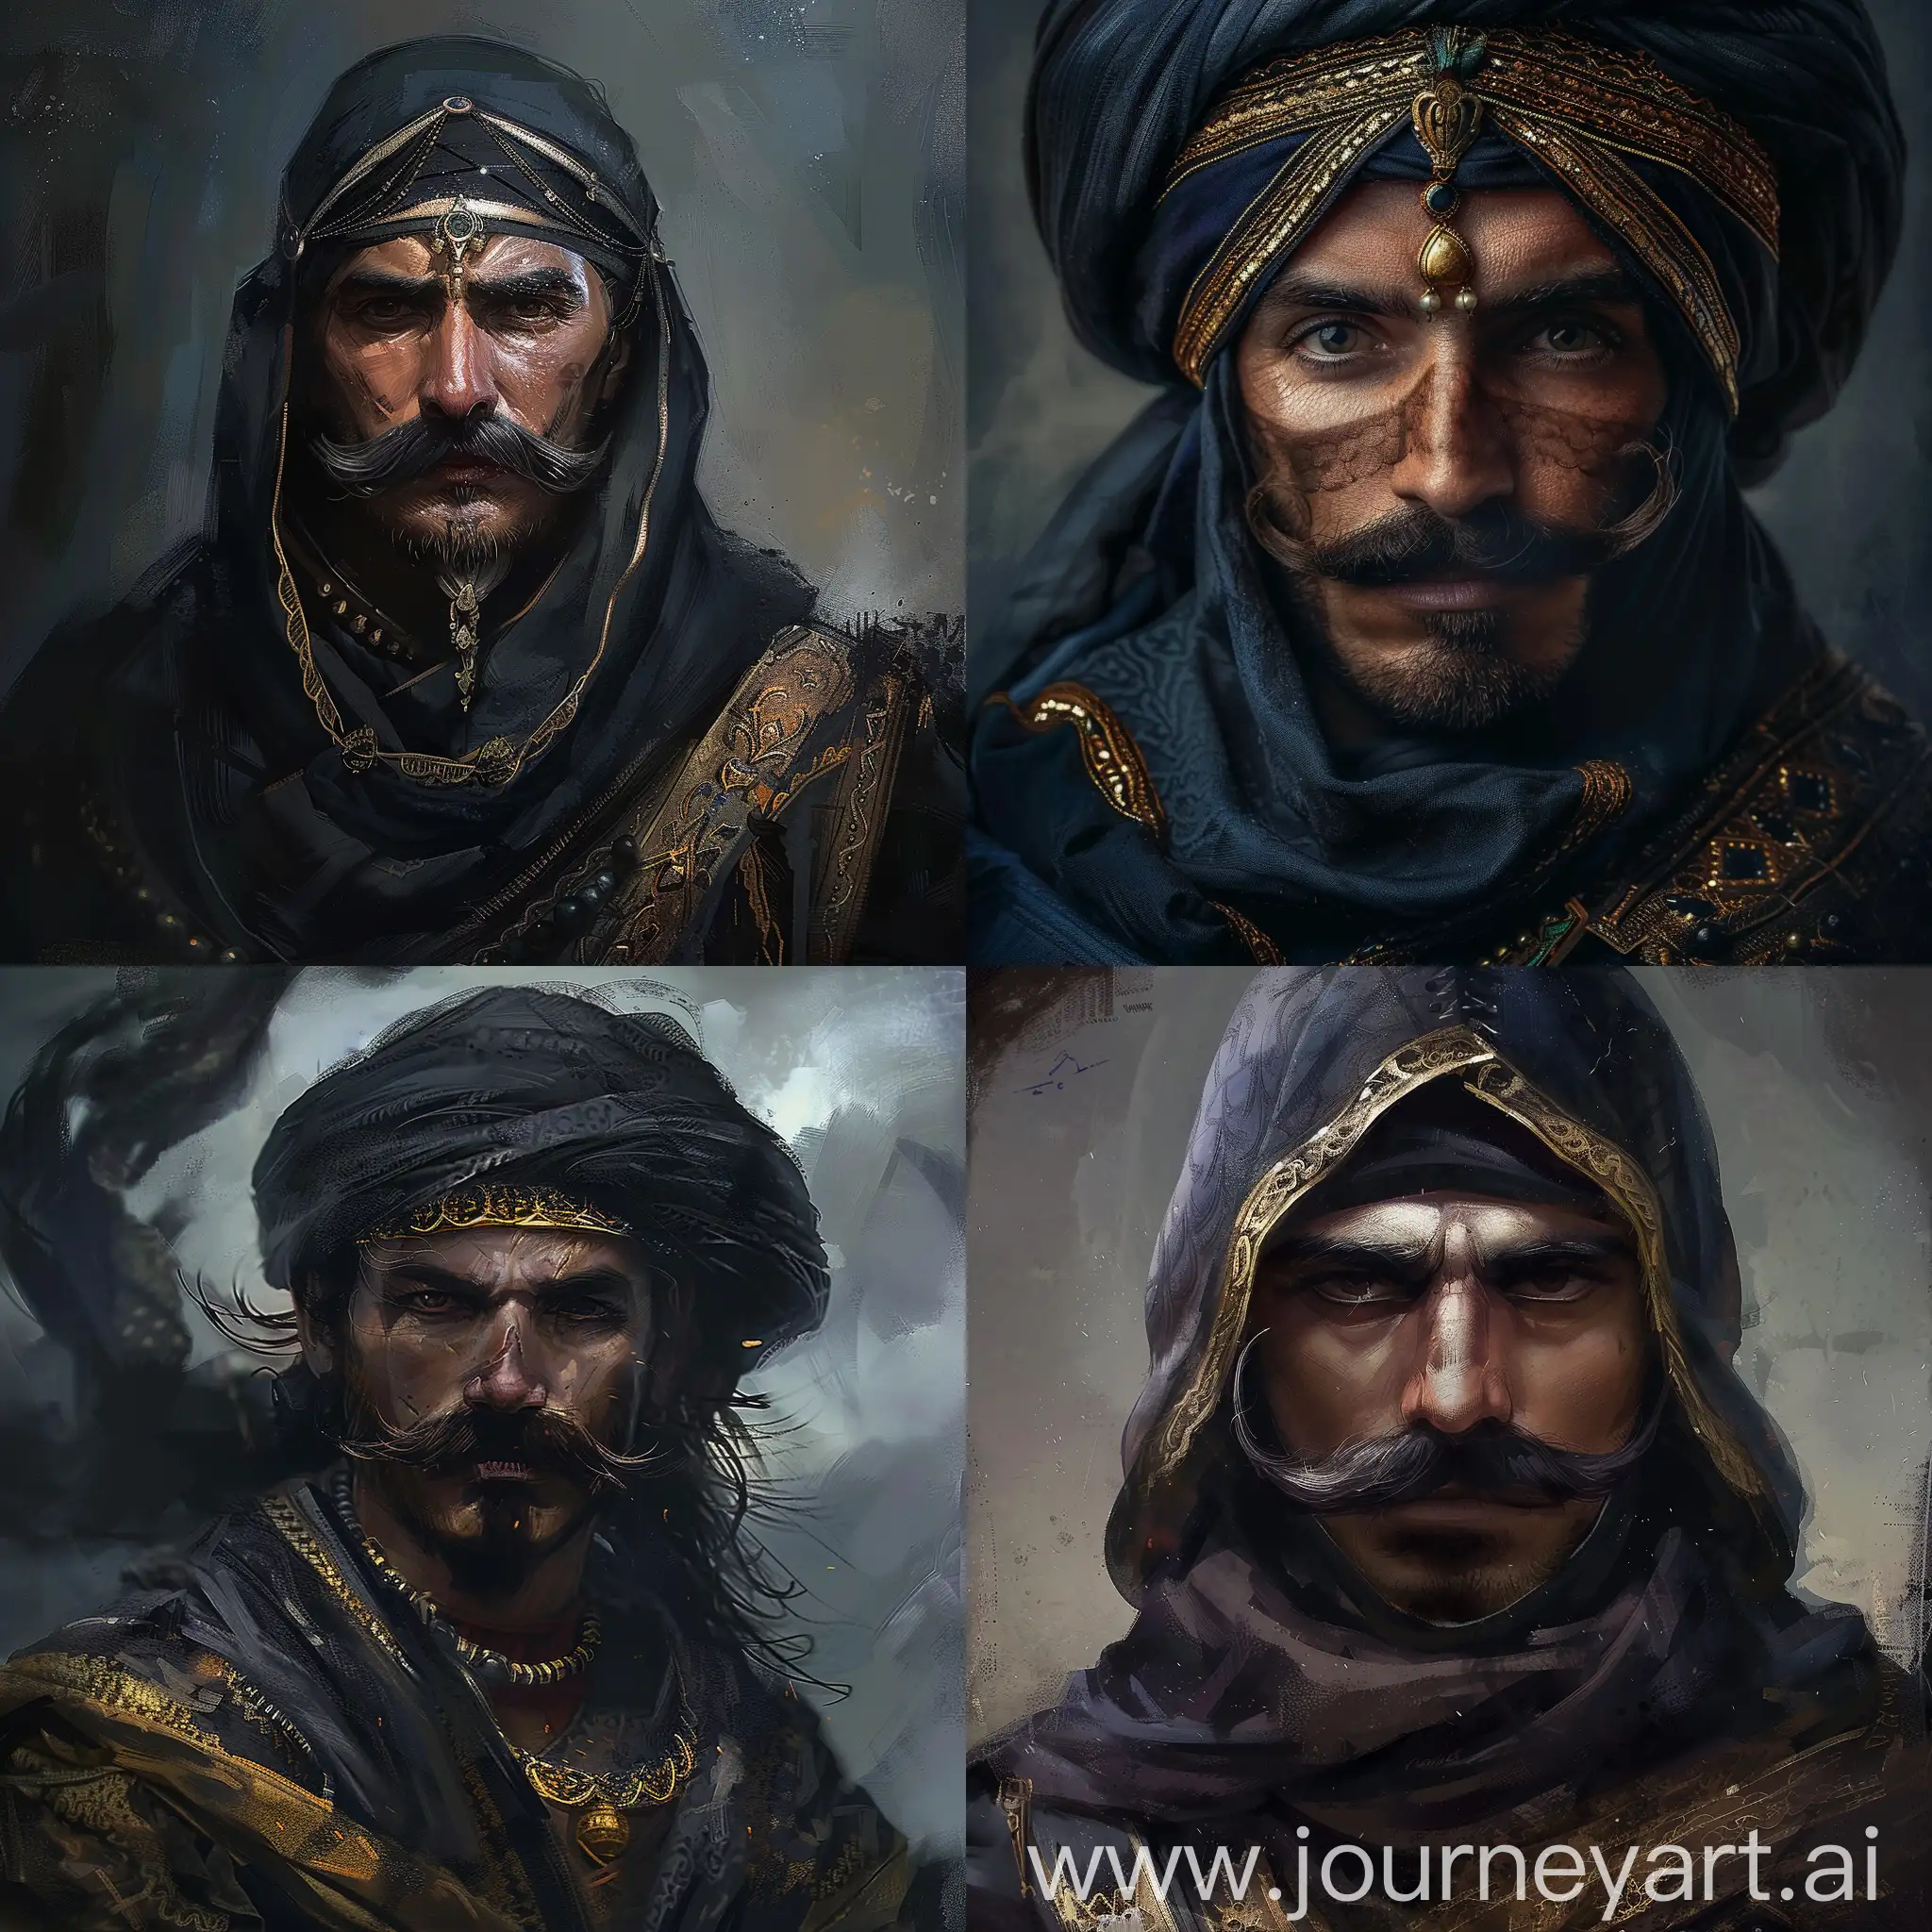 Arabian-Warrior-in-Dark-Fantasy-Style-with-Mustache